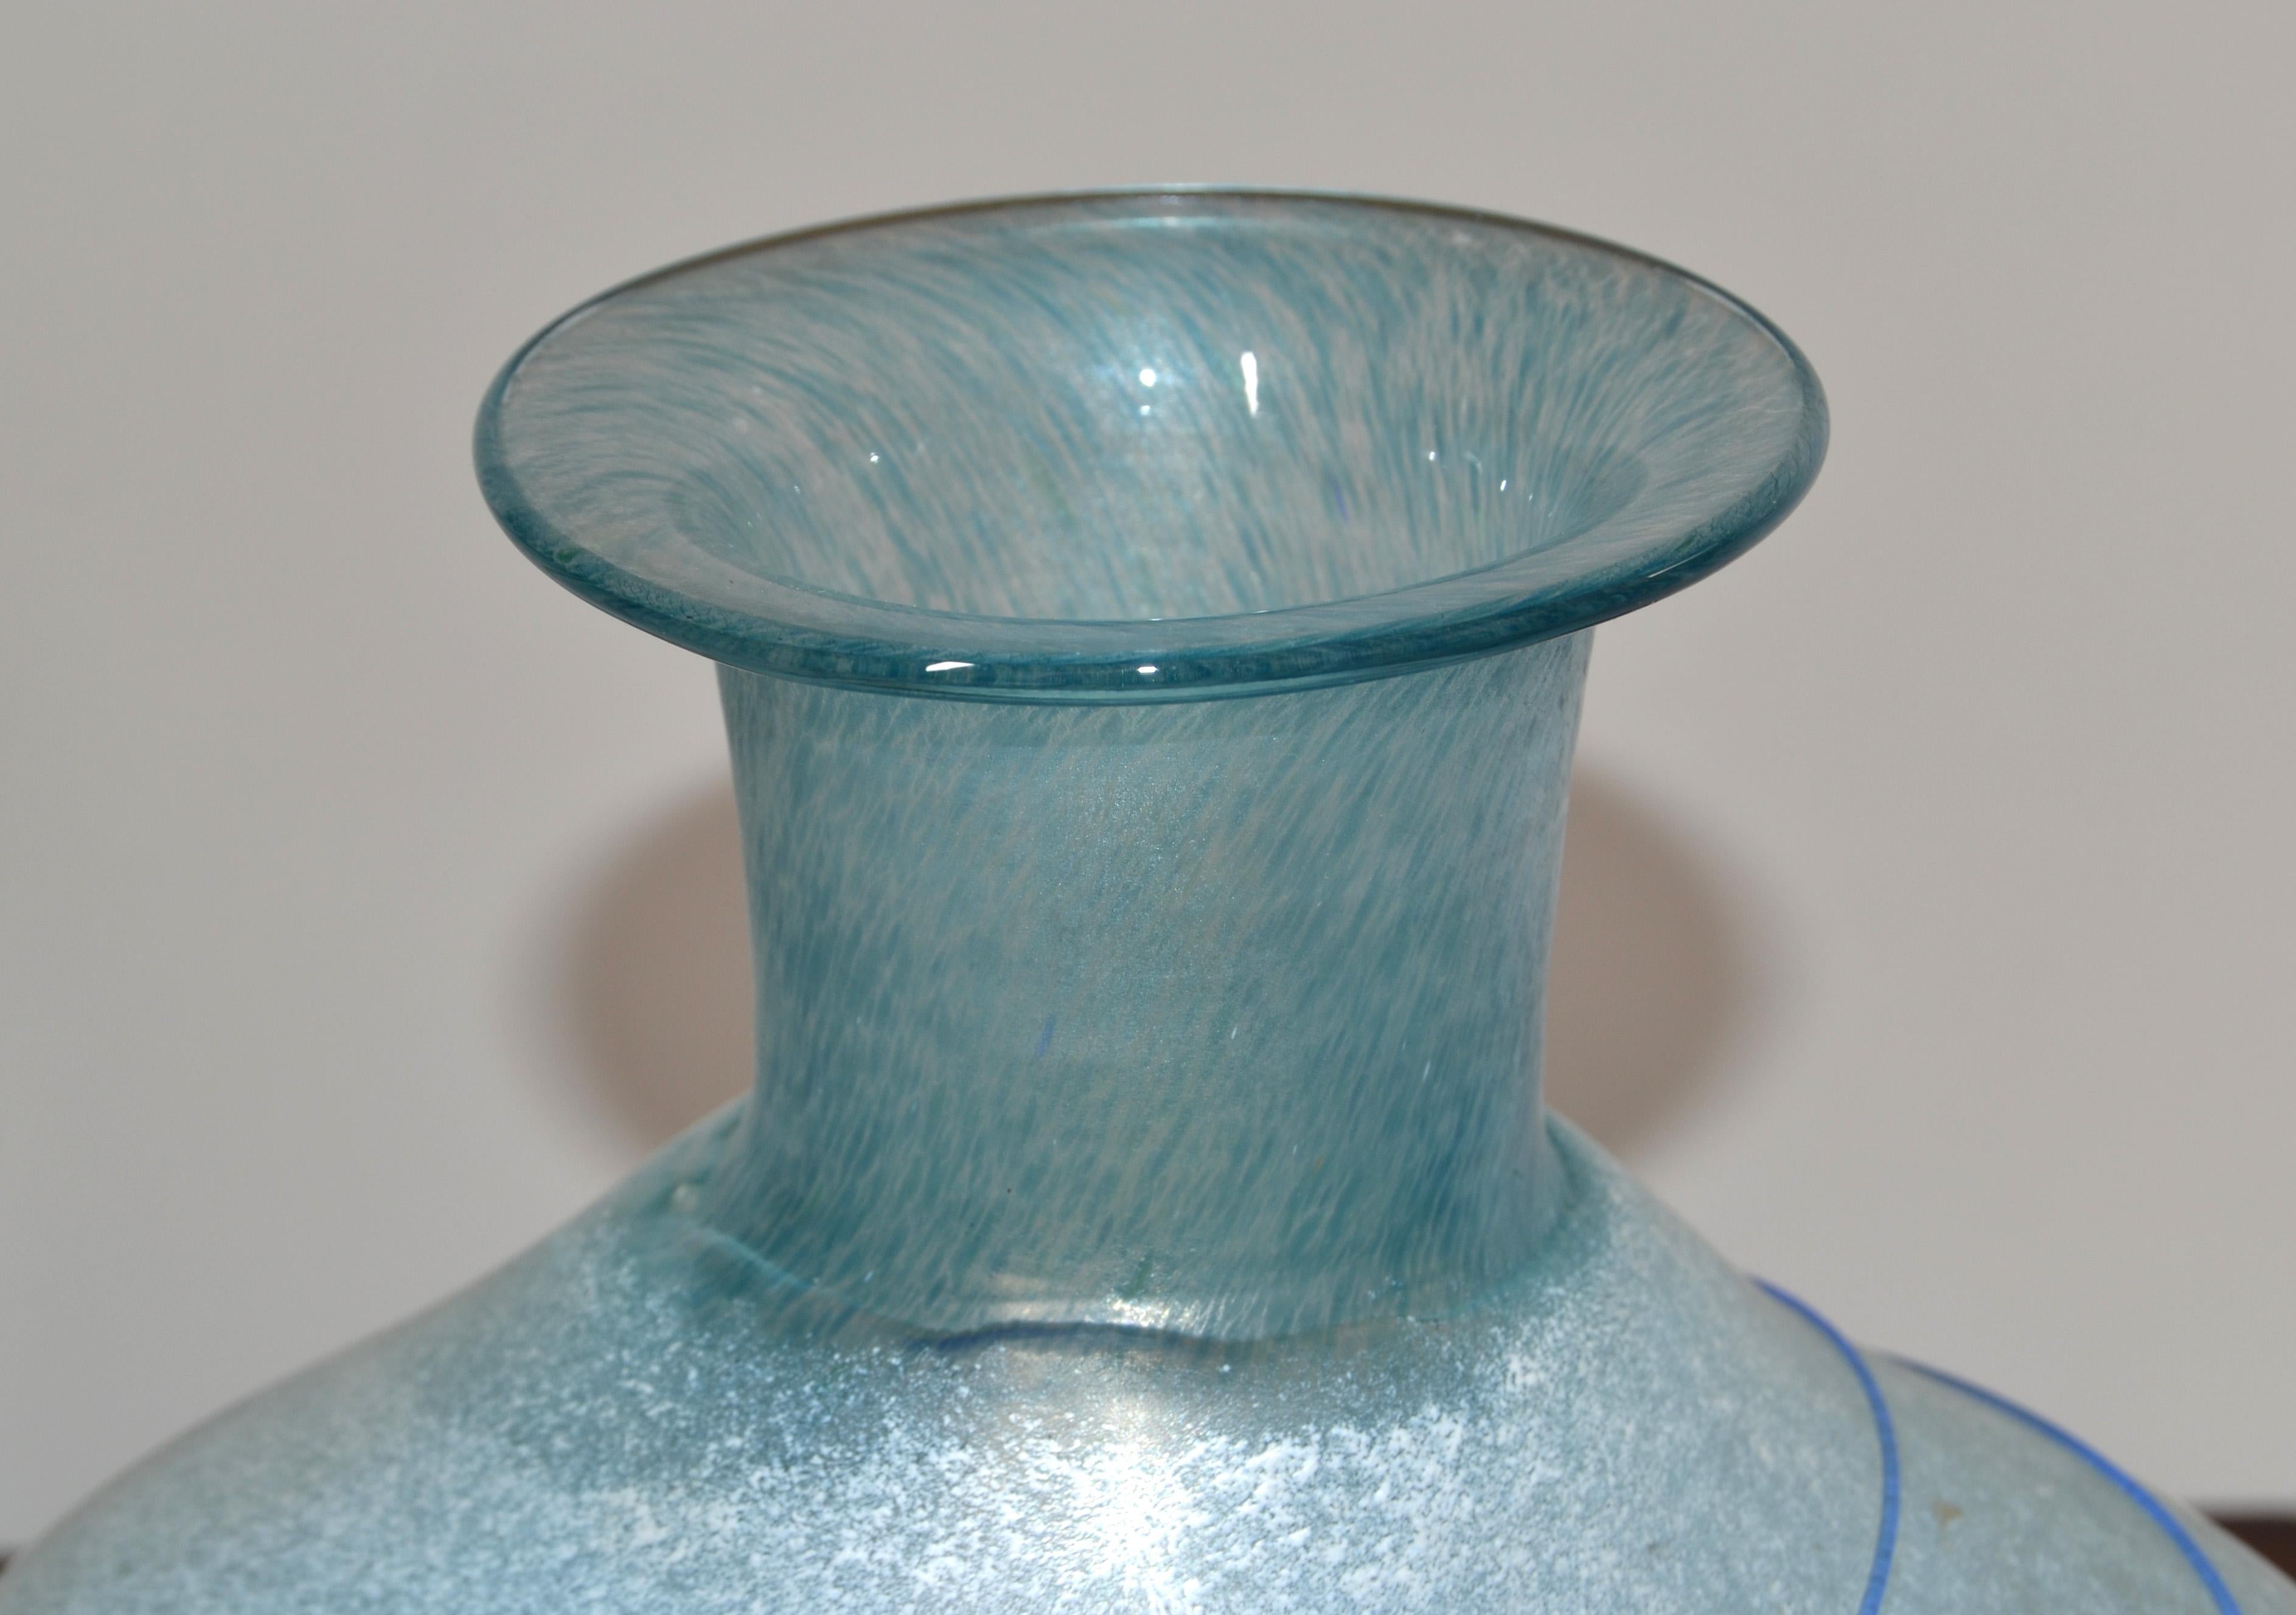 Kosta Boda Bertil Vallien Blue Galaxy Art Glass Vase Decanter Scandinavian 1950  For Sale 5